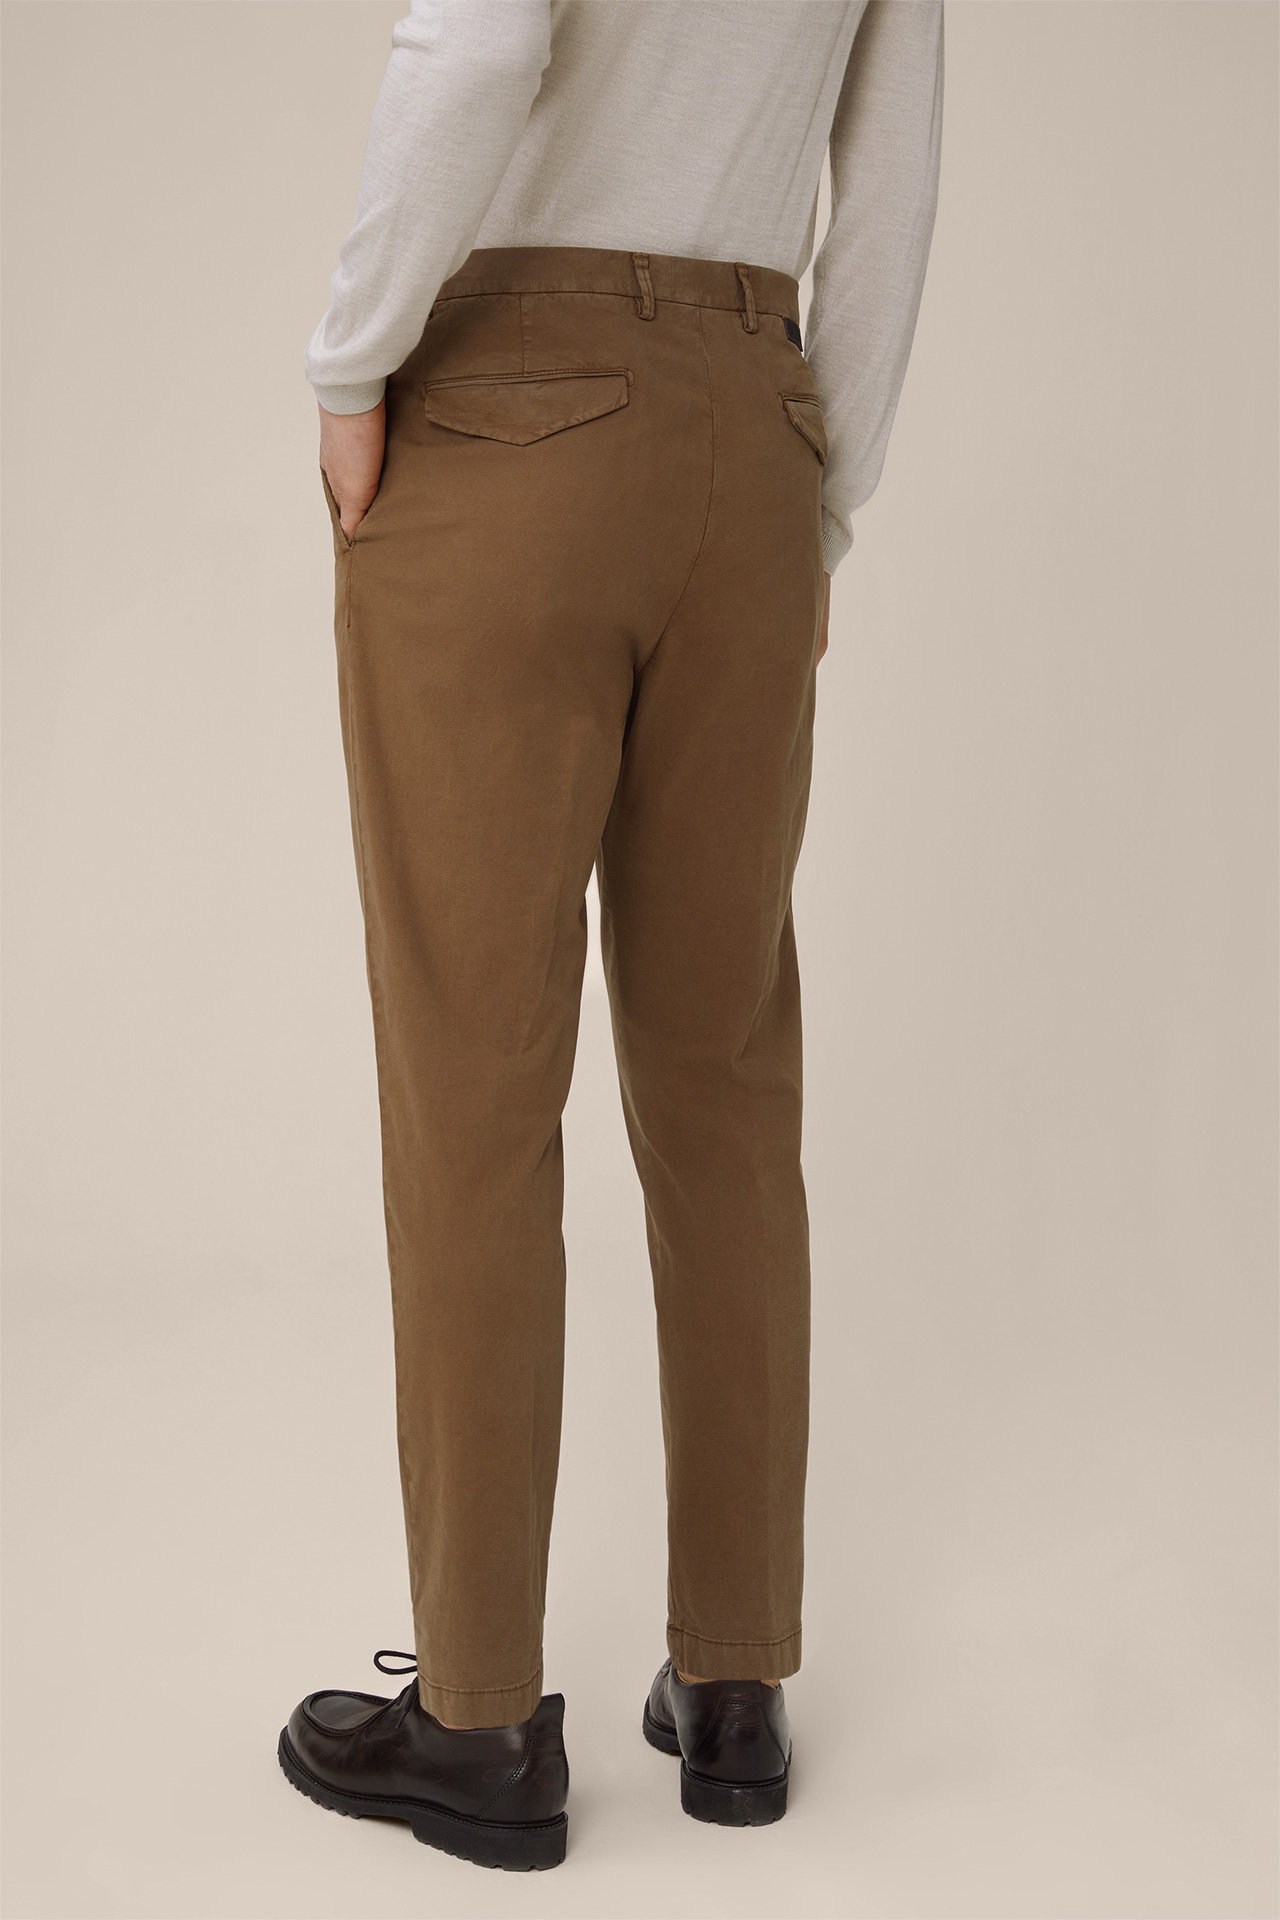 Pantalon à pinces en coton mélangé Flero, couleur taupe